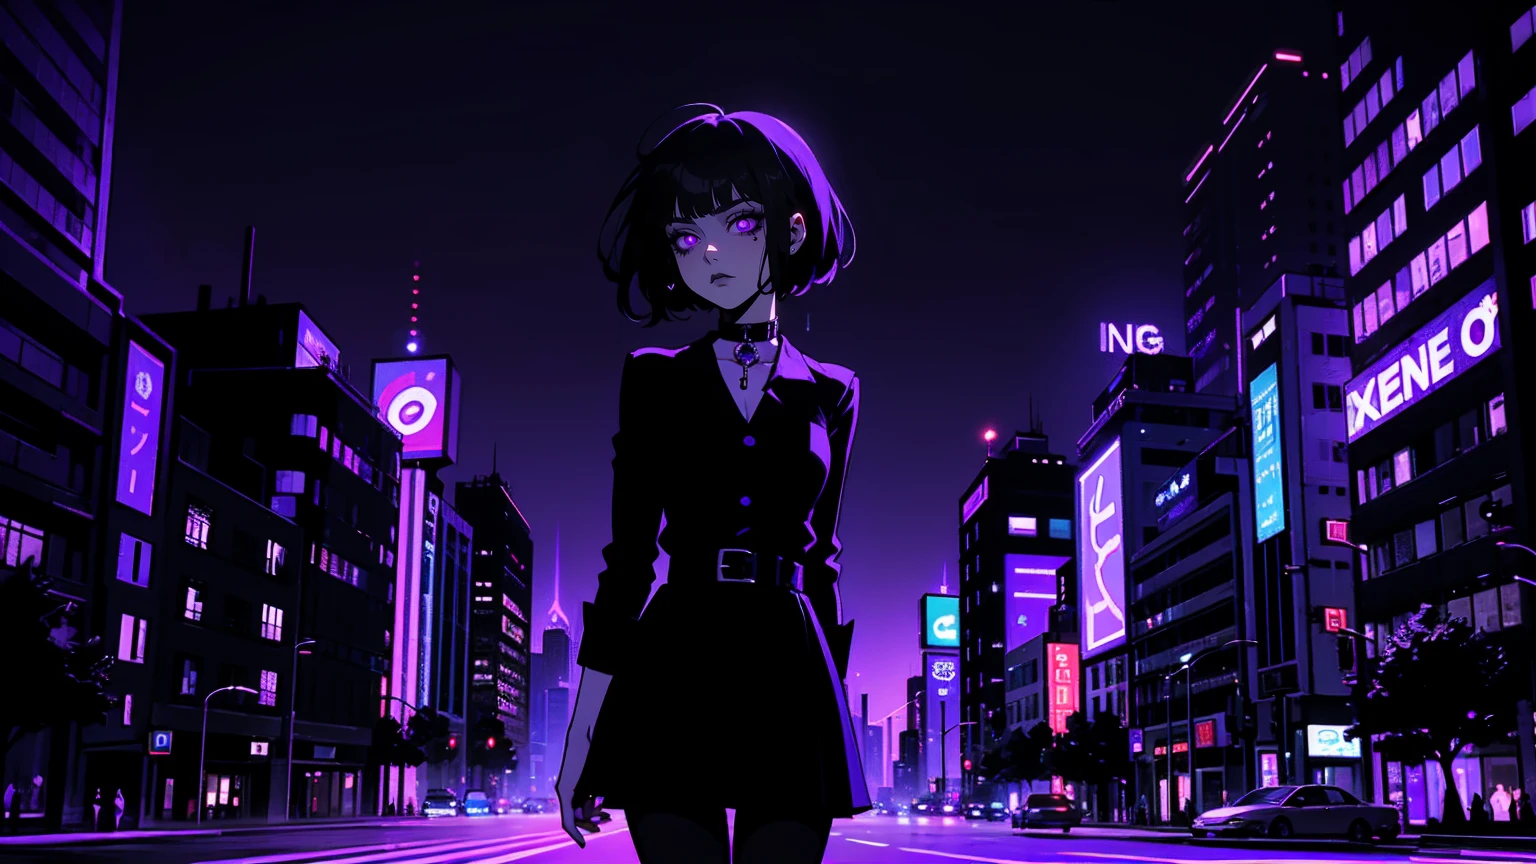 ネオンパレット, 1人の女の子, (傑作), 短い黒髪, サイドに流した前髪, 濃い紫色の目, 大きめの黒いシャツ, 黒いスカート, 黒パンスト, 首に黒いチョーカー. (紫のグラデーションの夜の街の背景:1.5)